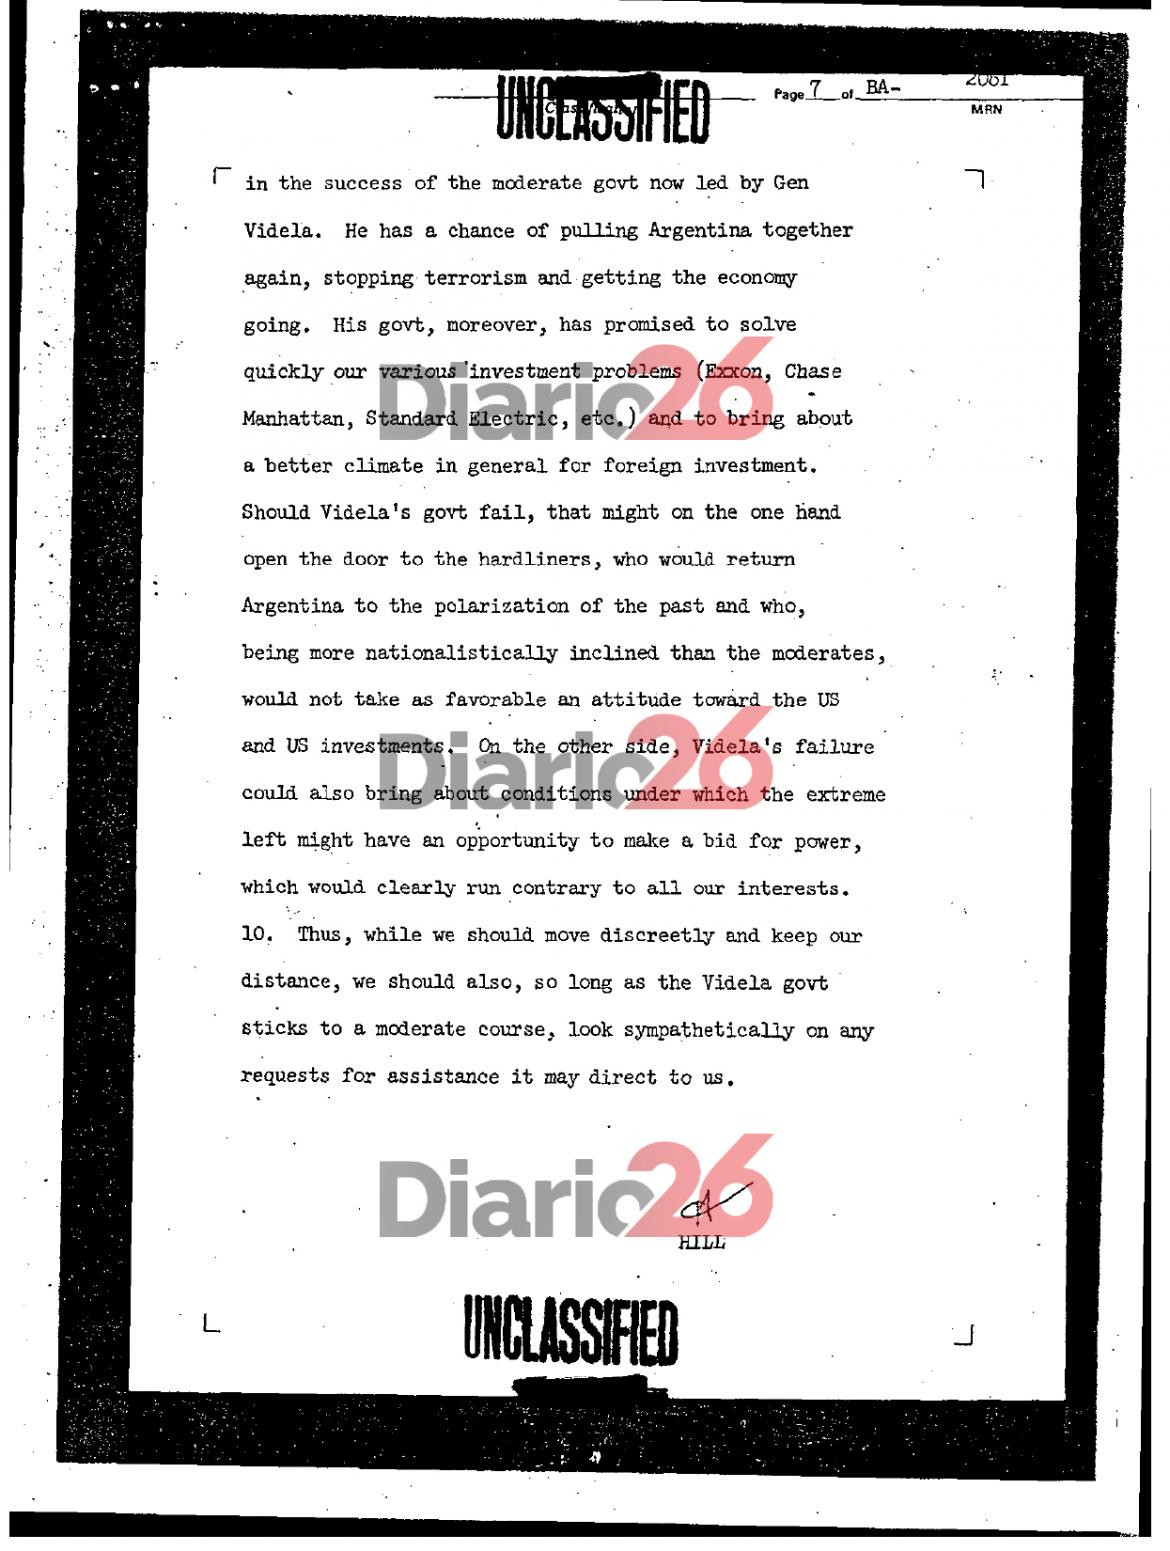 24 de marzo de 1976, golpe militar, dictadura militar en Argentina, documentos de Estados Unidos, Videla